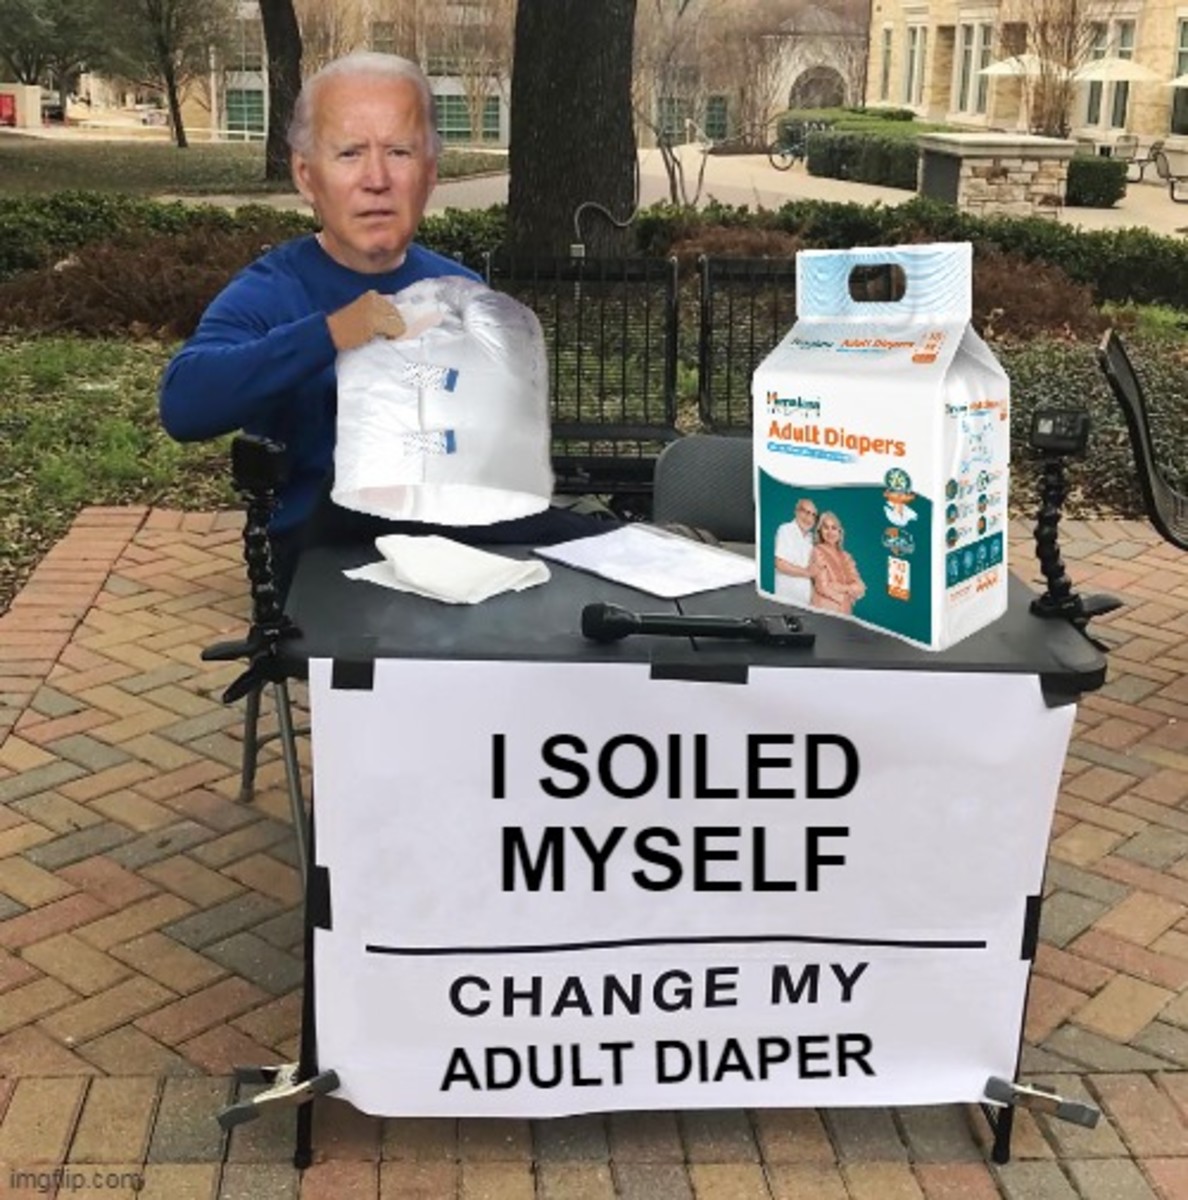 Joe Biden, new spokesman for adult diapers, sales up